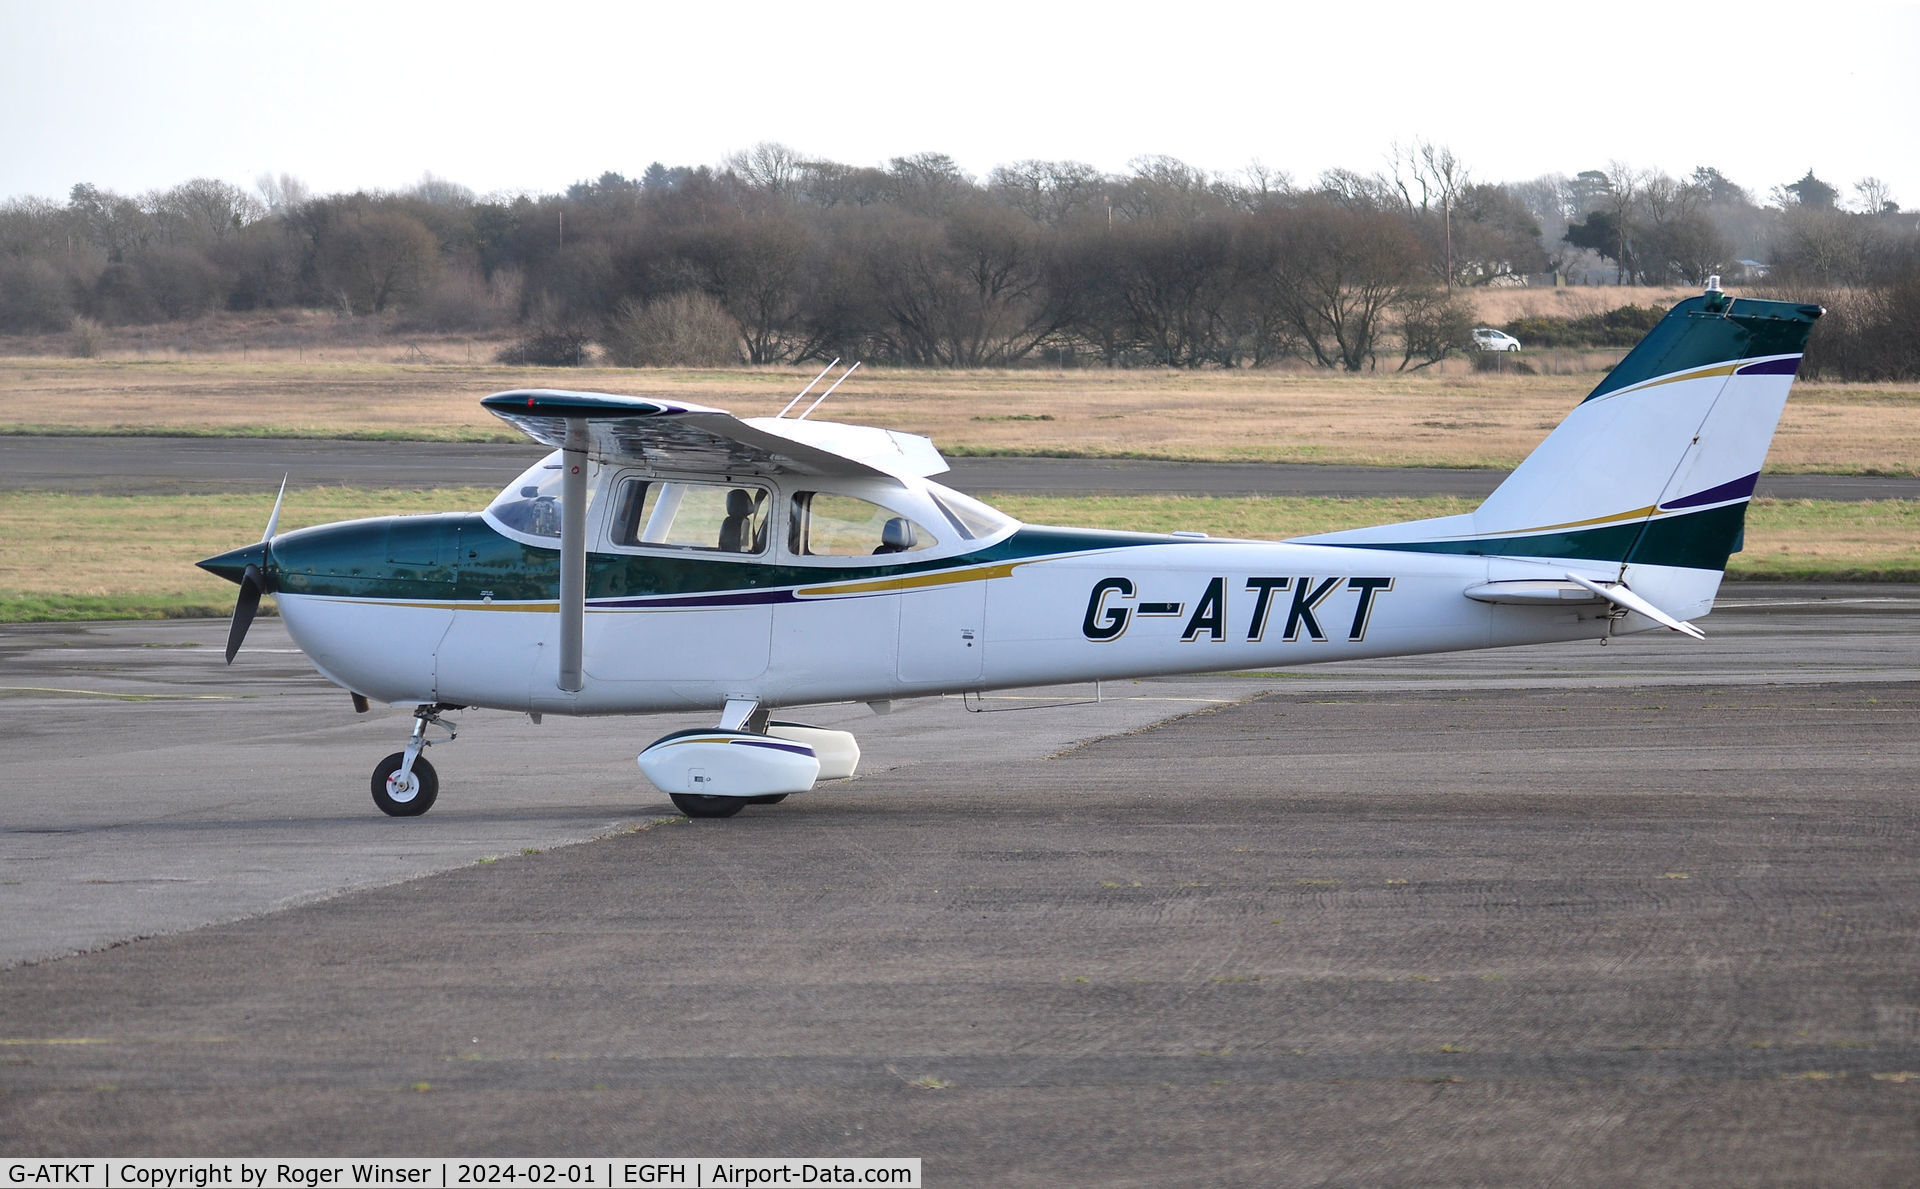 G-ATKT, 1965 Reims F172G Skyhawk C/N 0206, Resident Skyhawk.